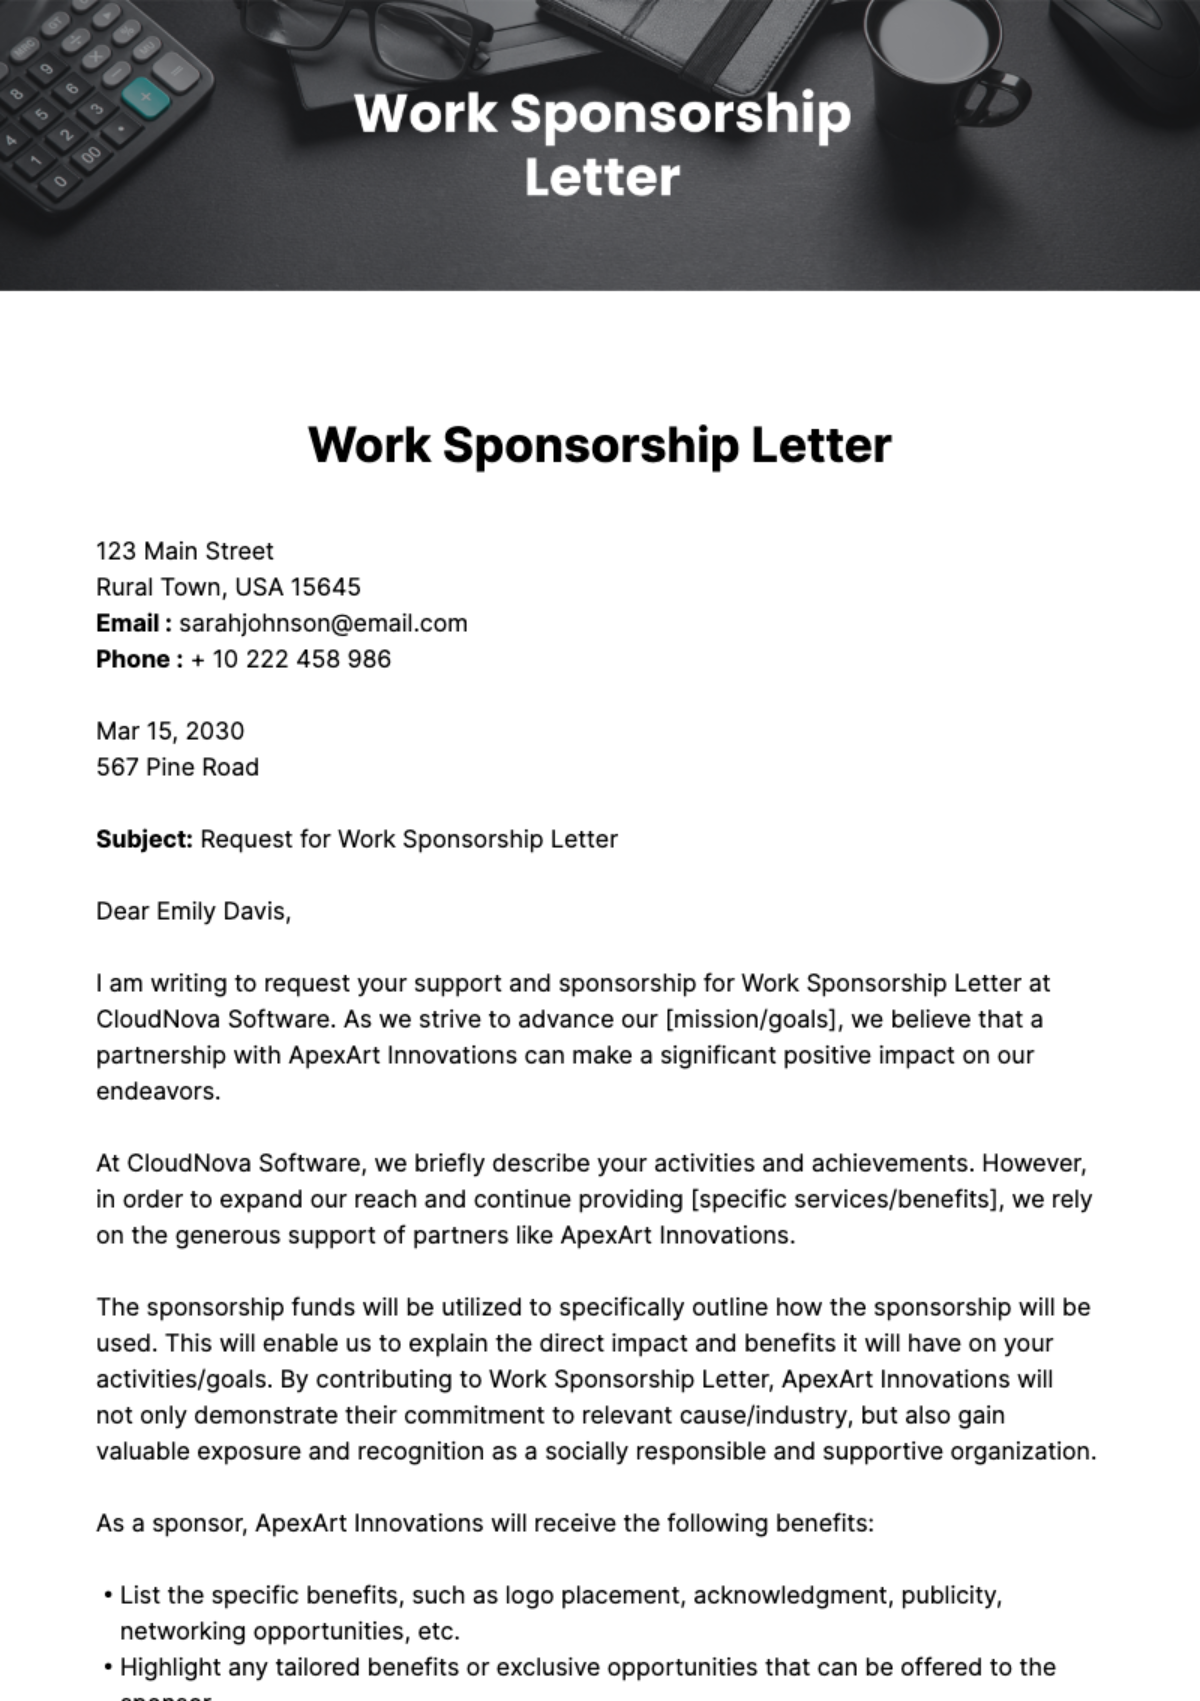 Work Sponsorship Letter Template